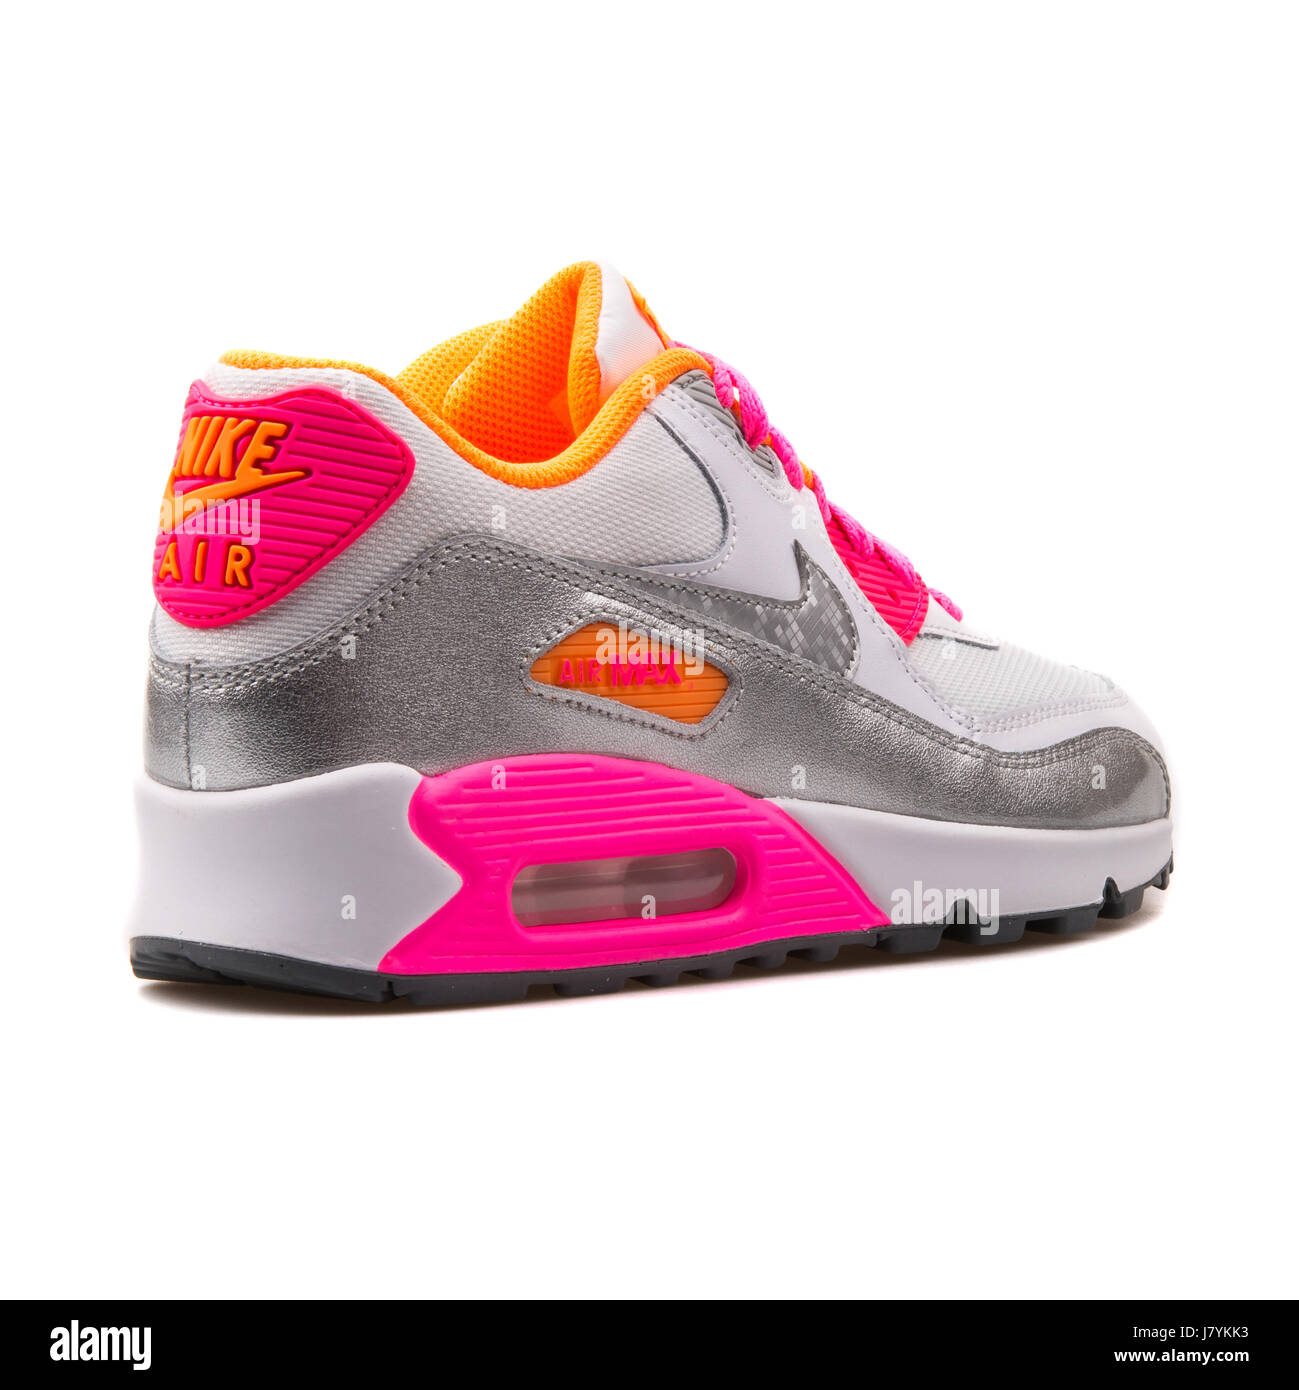 Nike Air Max 90 Malla (GS) Juventud blanco, plata y rosa ejecutando  Sneakers - 724855-101 Fotografía de stock - Alamy